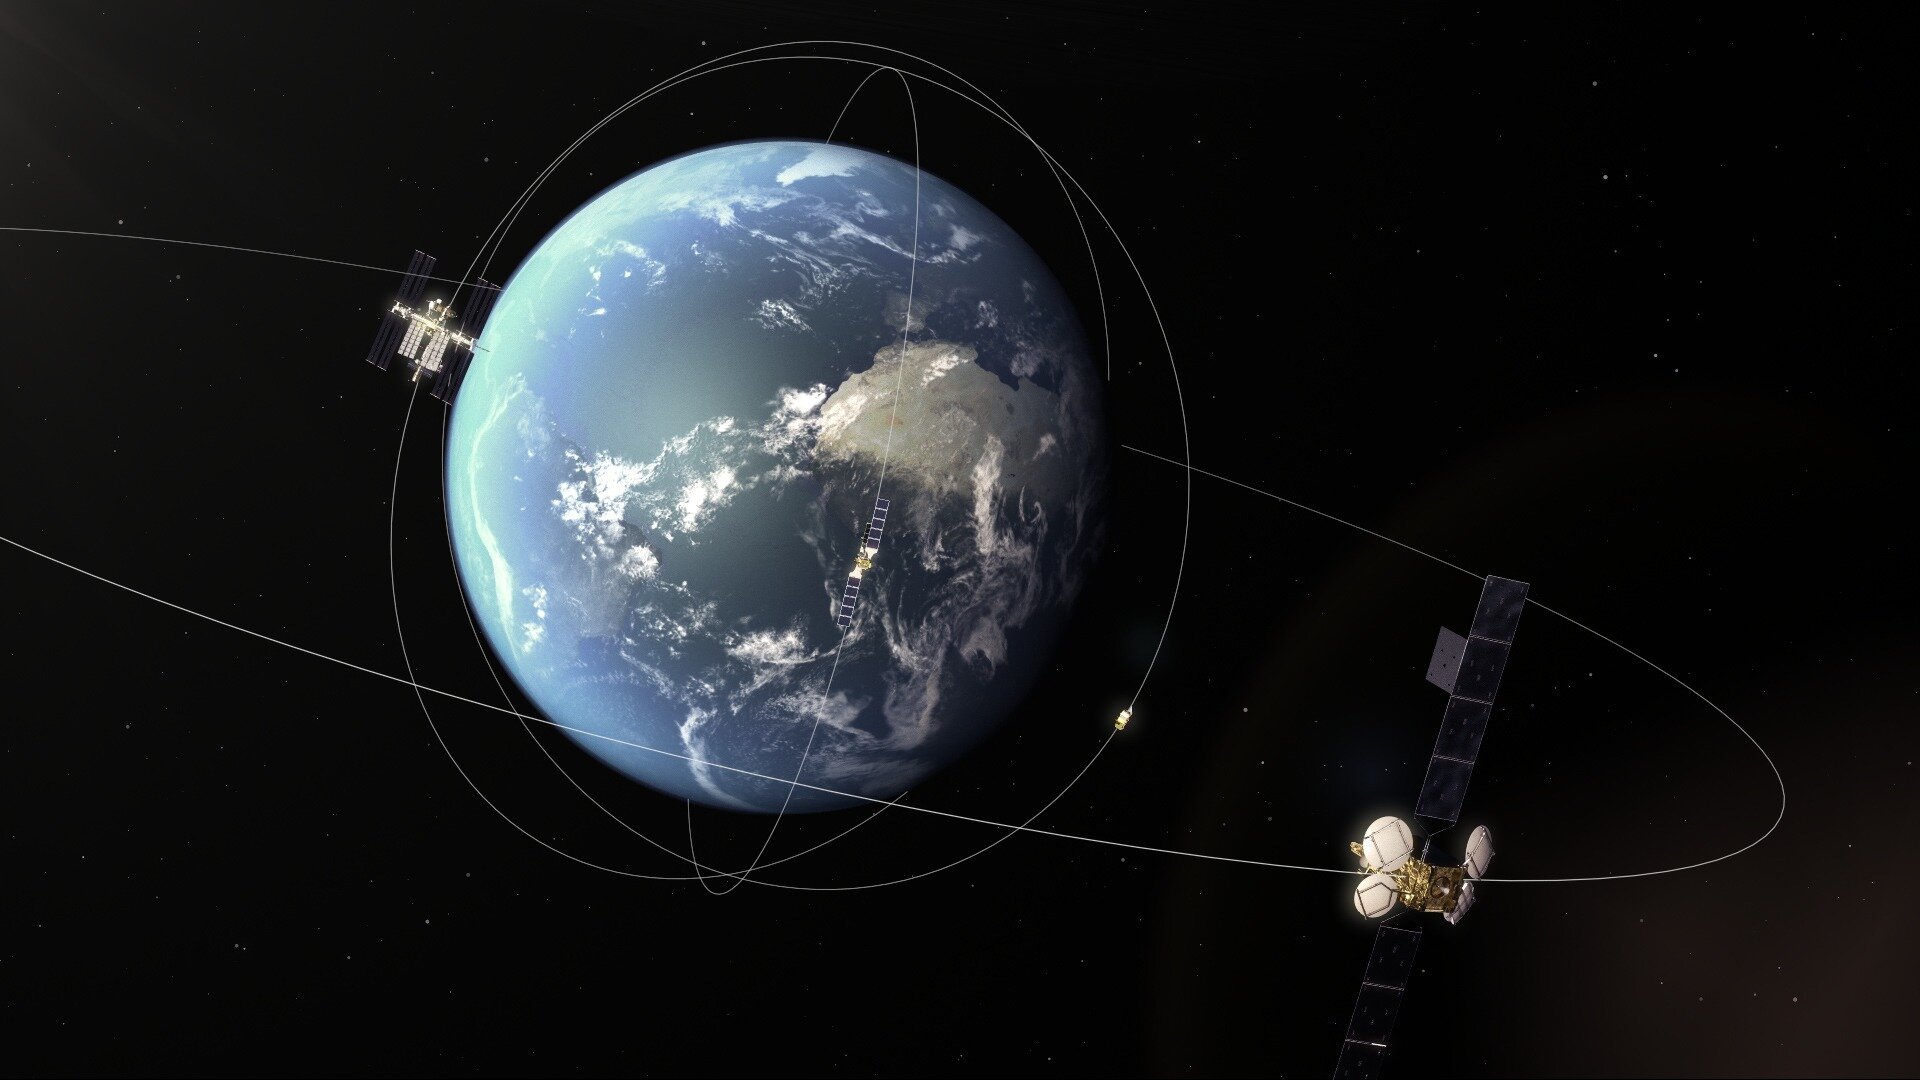 Systém EDRS (European Data Relay System) využívá laserového spojení pro rychlý sběr dat z družic na nízkých oběžných drahách